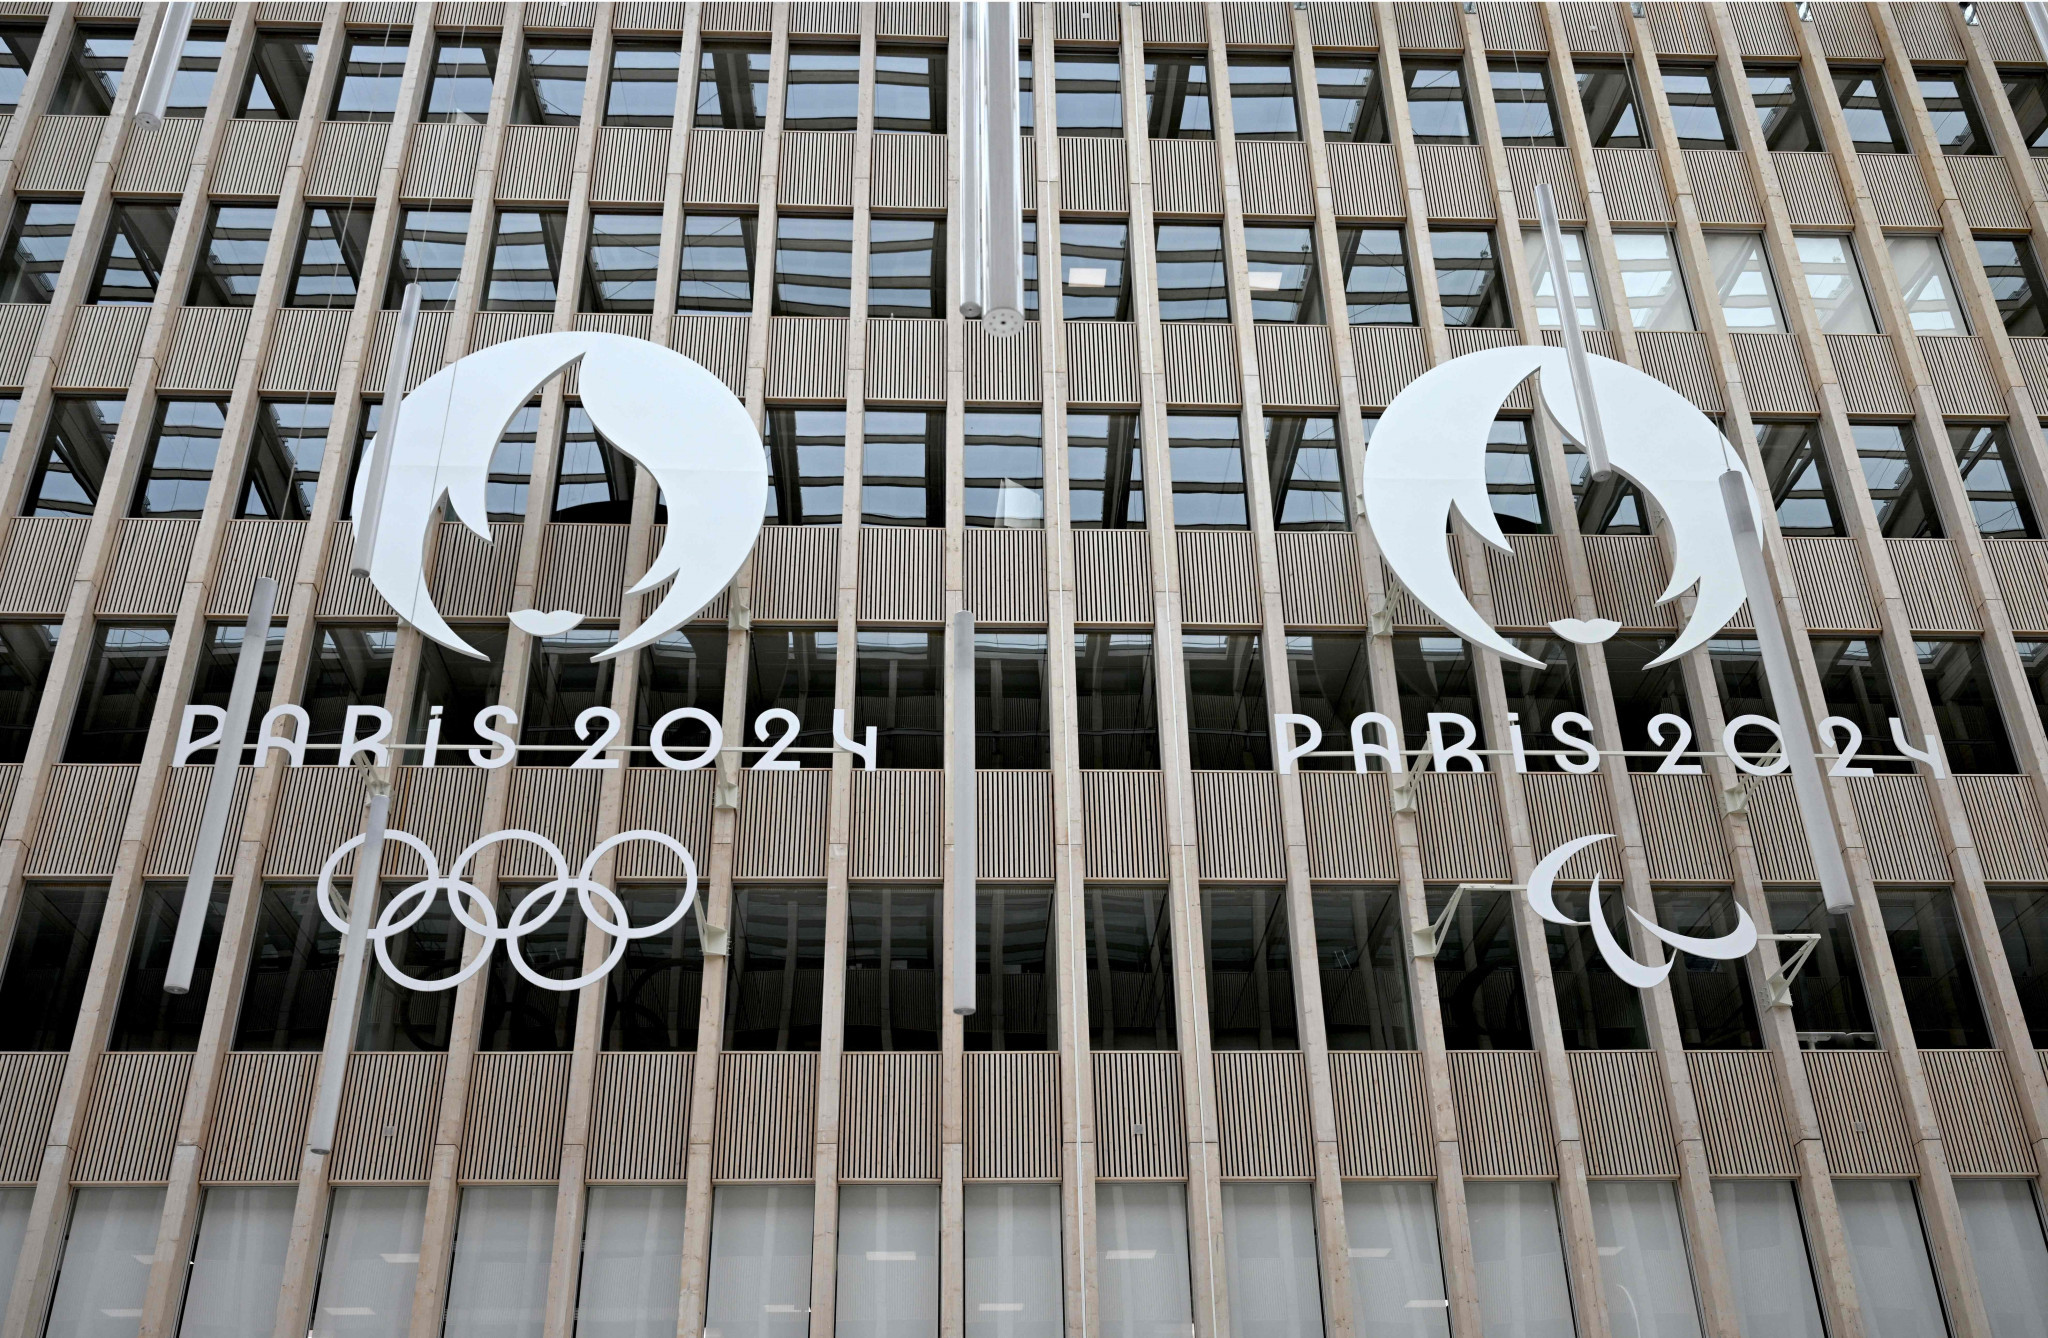 France denounces a smear campaign against the Paris Olympics from Azerbaijan